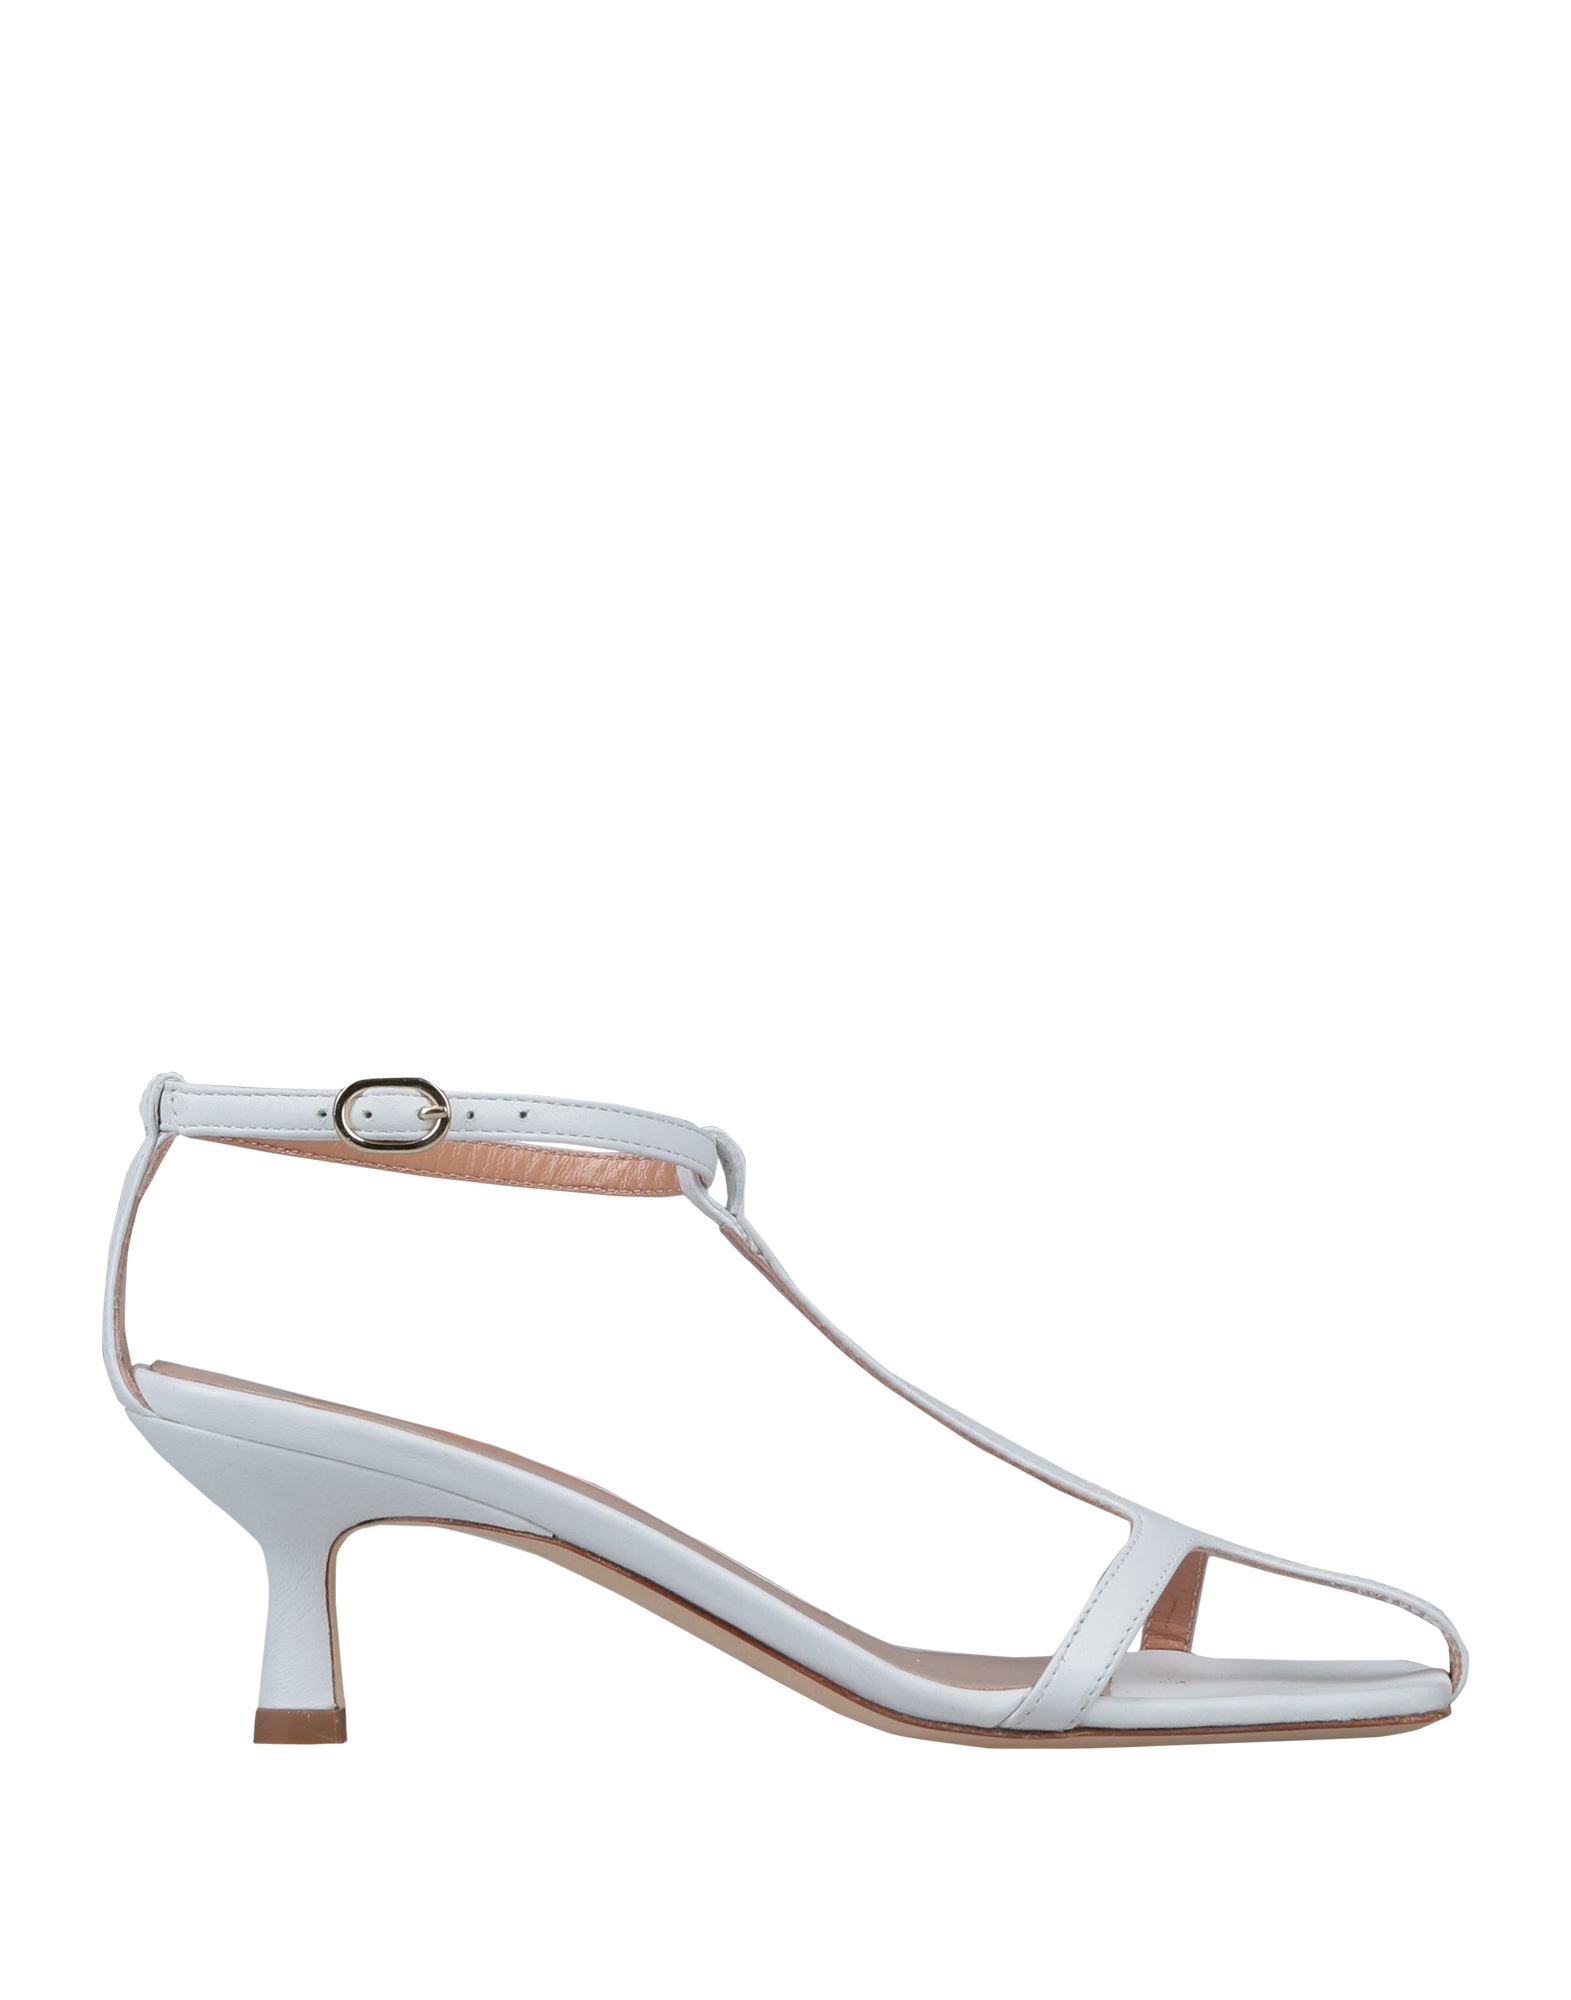 Erika Cavallini Sandals In White